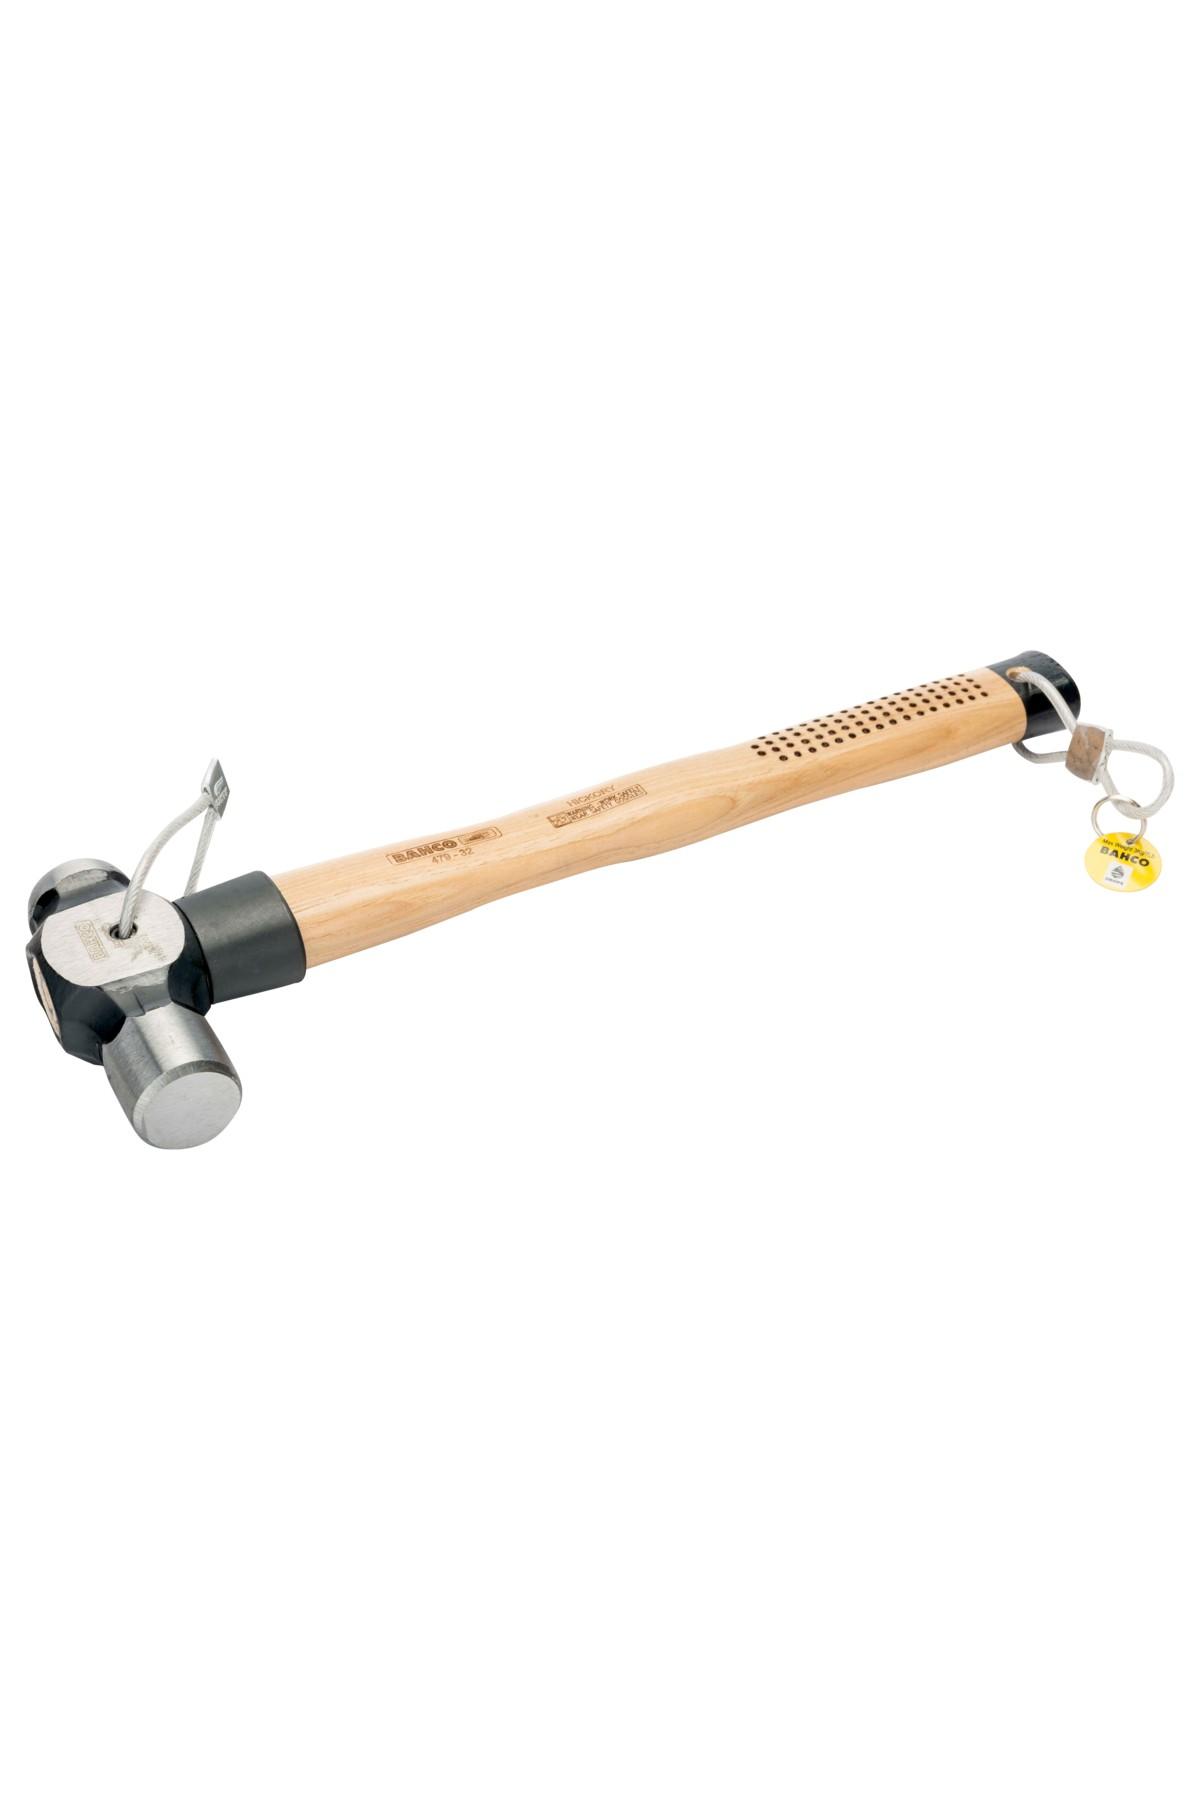 Ball pen hammer 900g height-secured